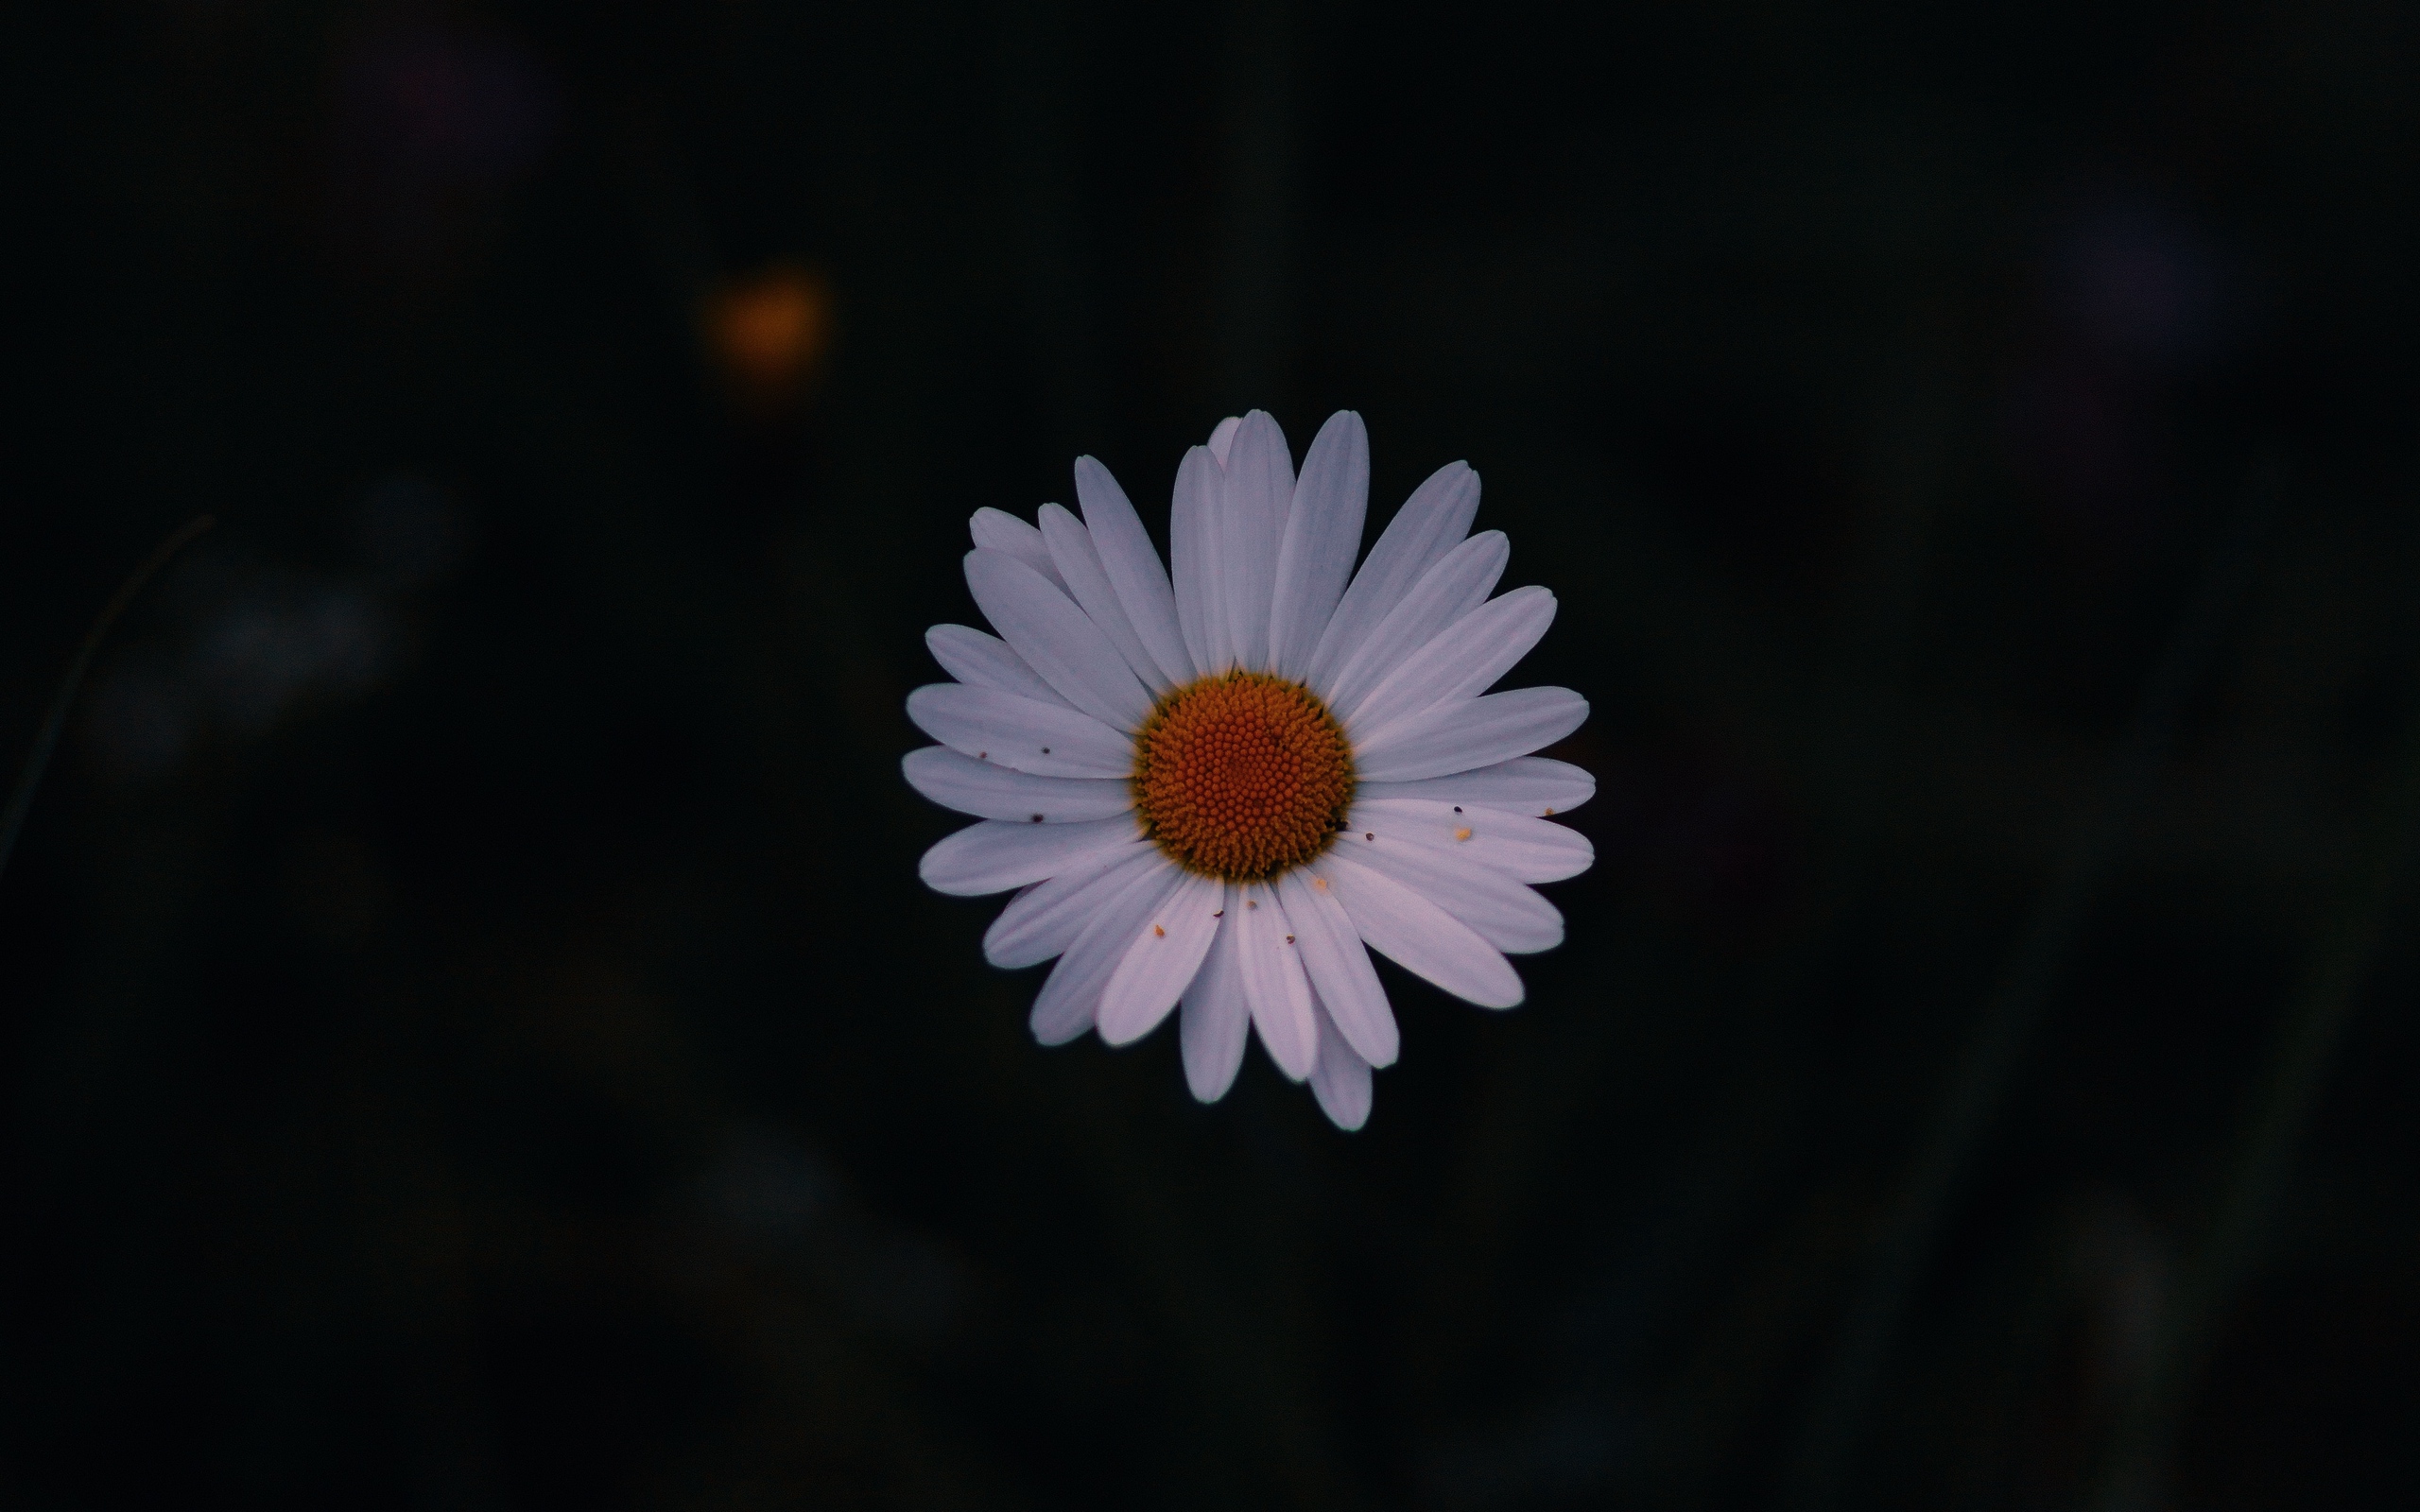 Download wallpaper 2560x1600 daisy, field flower, dark background